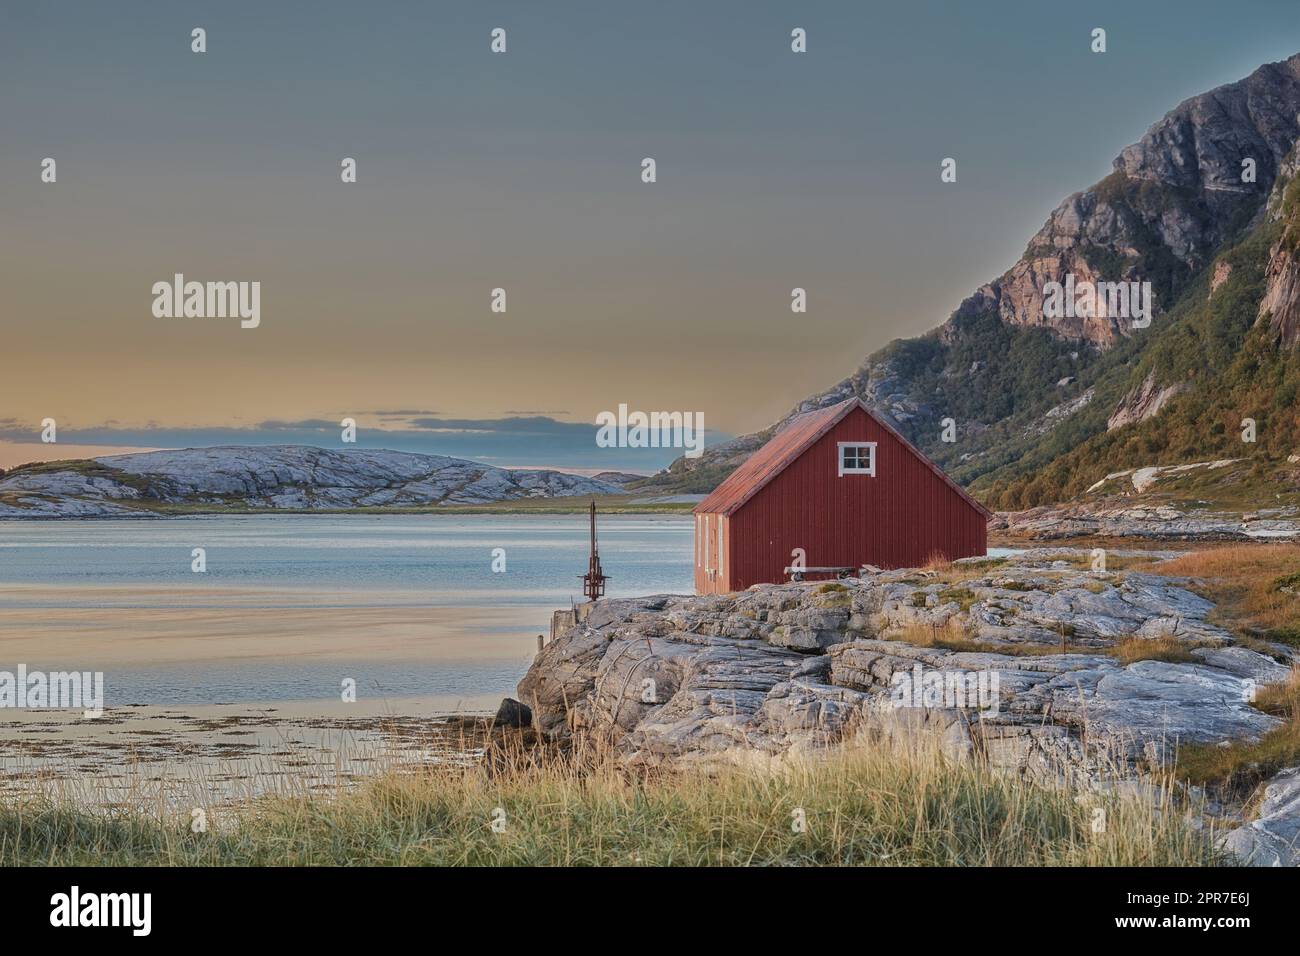 Malerischer Blick auf verlassenes Seehaus oder Hütte in einer abgelegenen und felsigen Landschaft. Natürliche Wildnis um eine kleine Wasserbucht in Norwegen. Landschaft und Meereslandschaft eines Ozeans oder Meeres mit blauem Himmel Stockfoto